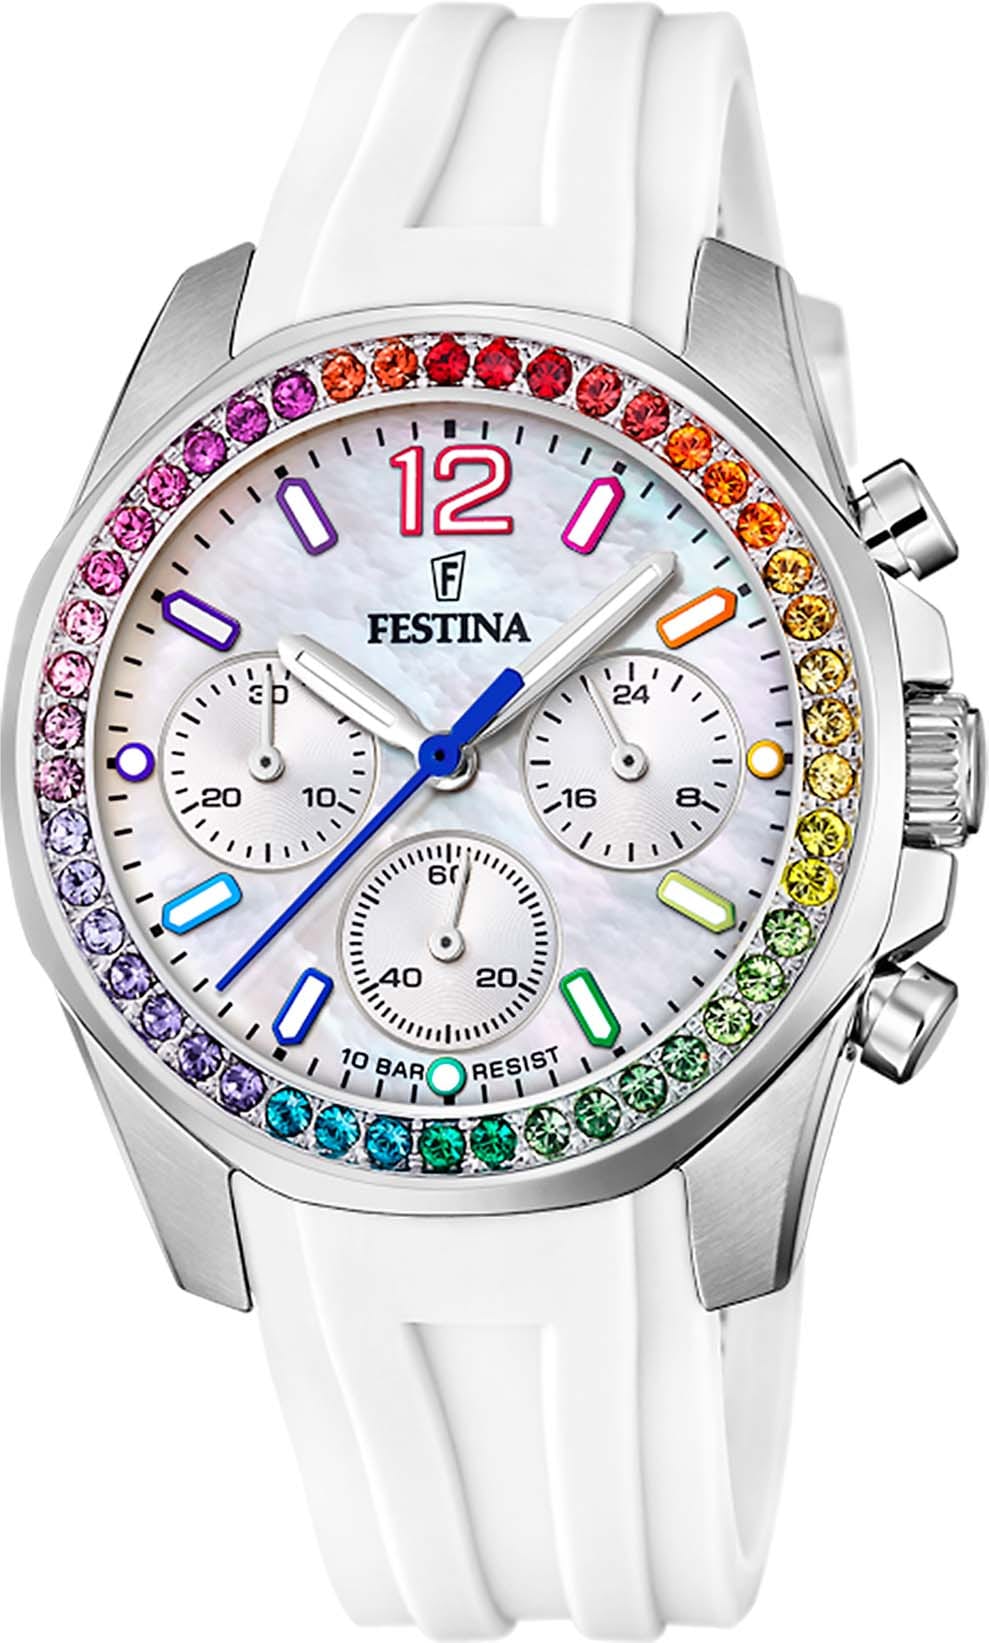 Festina Chronograph »Boyfriend, F20610/2«, Armbanduhr, Quarzuhr, Damenuhr, Stoppfunktion, Regenbogen